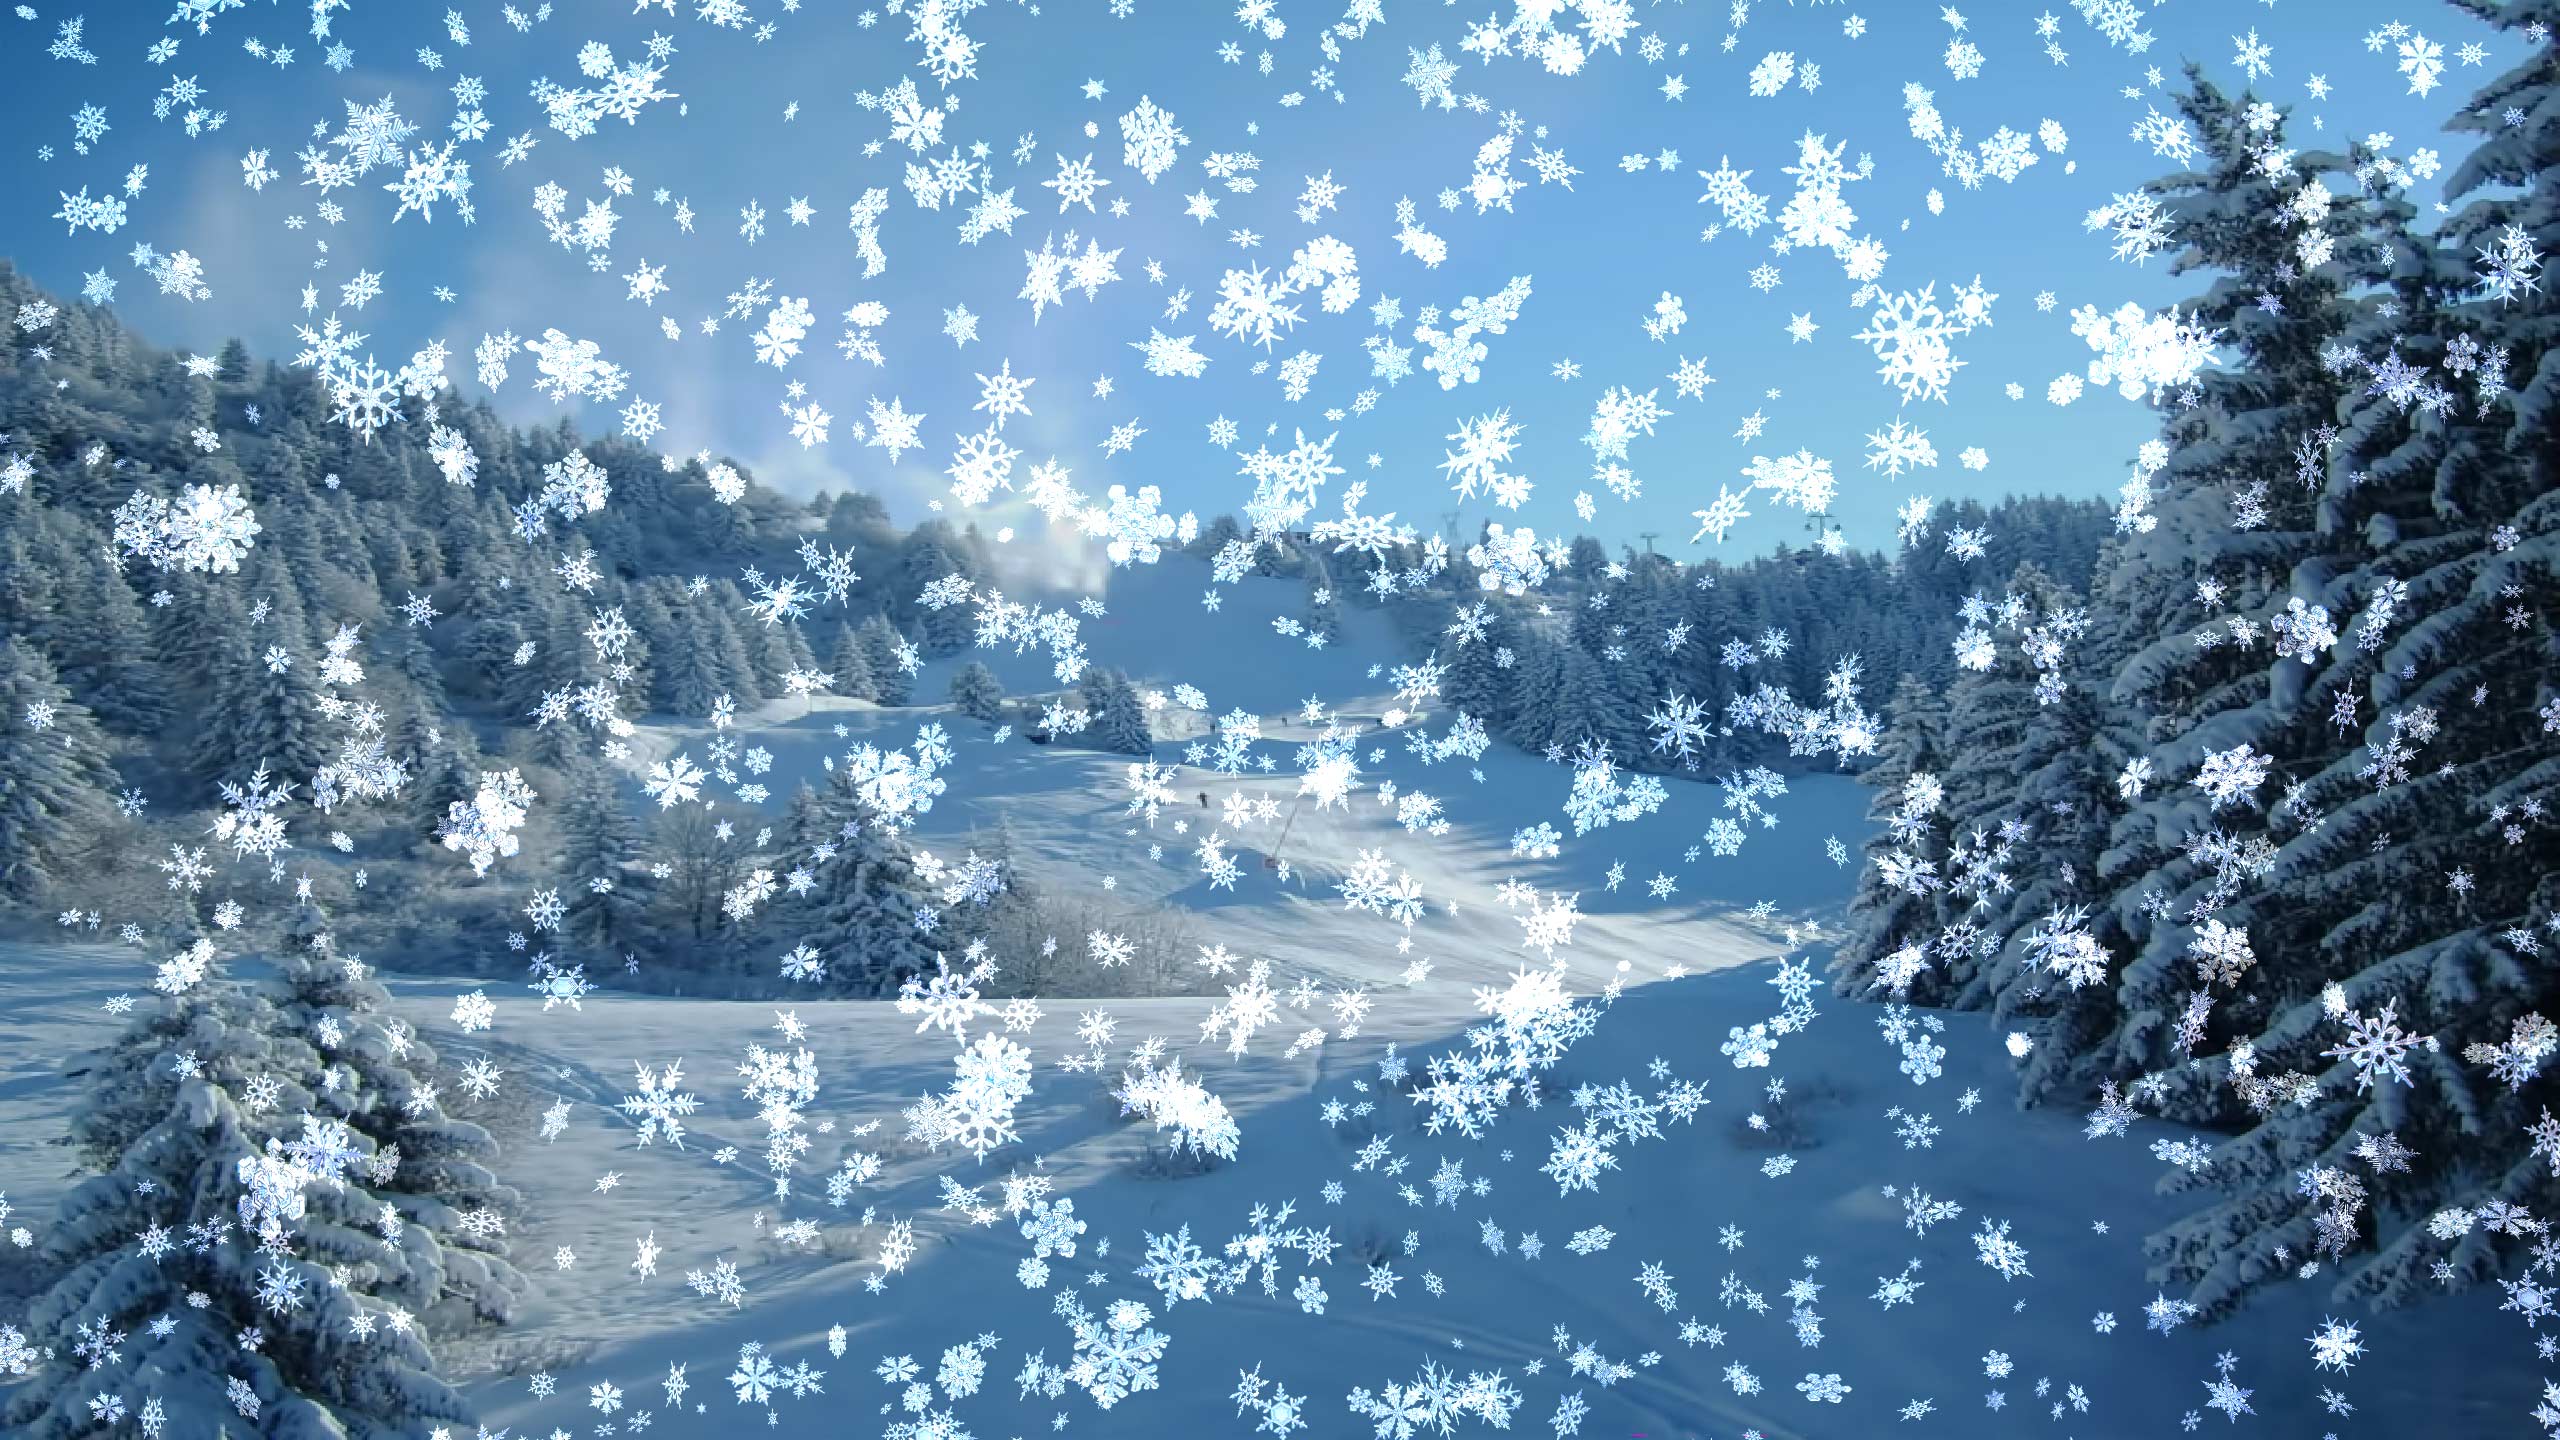 Snowfall Wallpaper Animated - WallpaperSafari